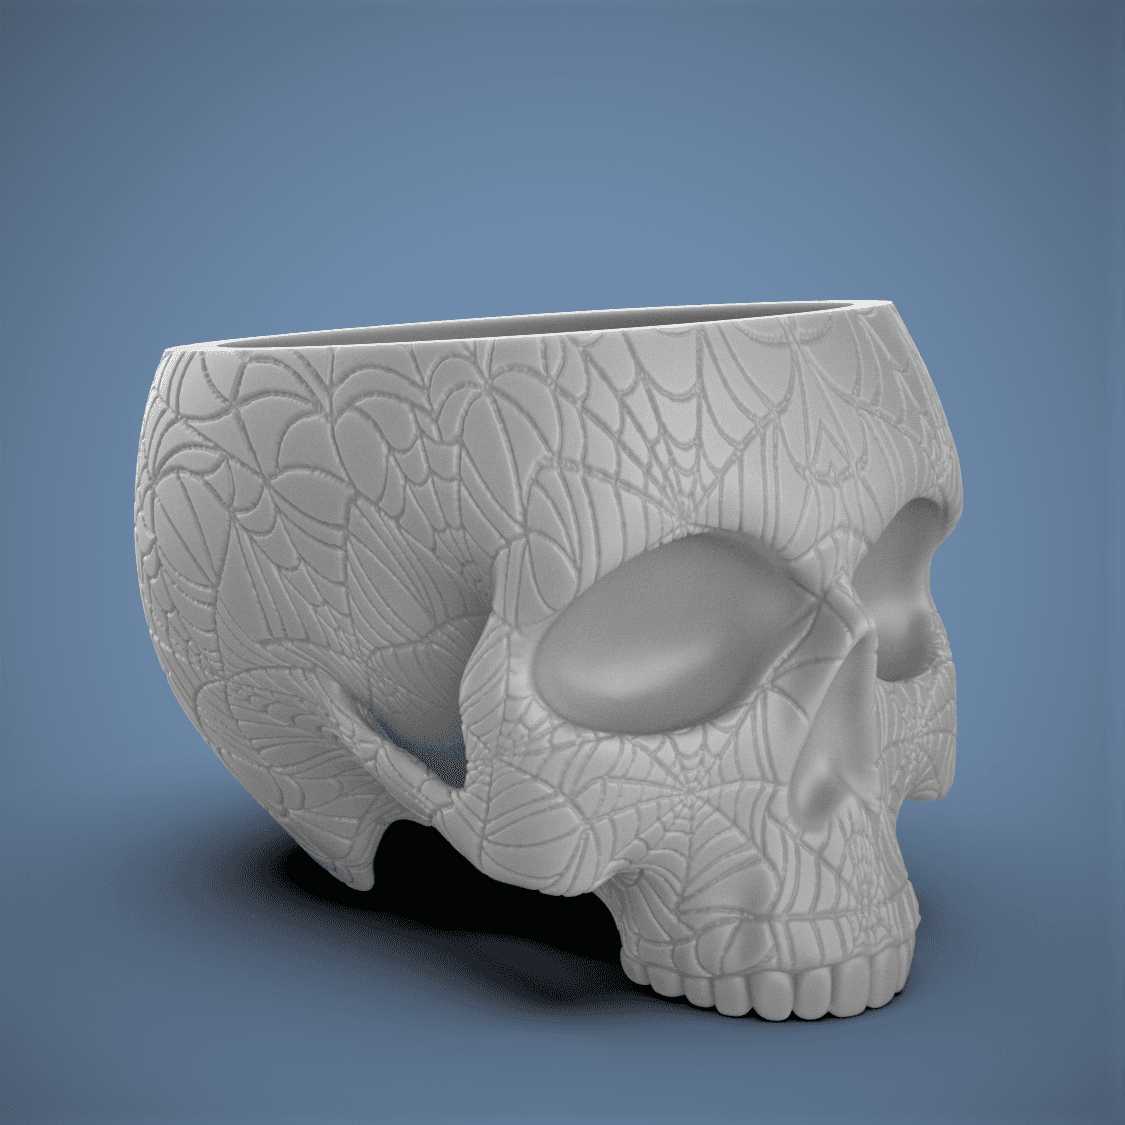 Web Skull Planter-Bowl 3d model